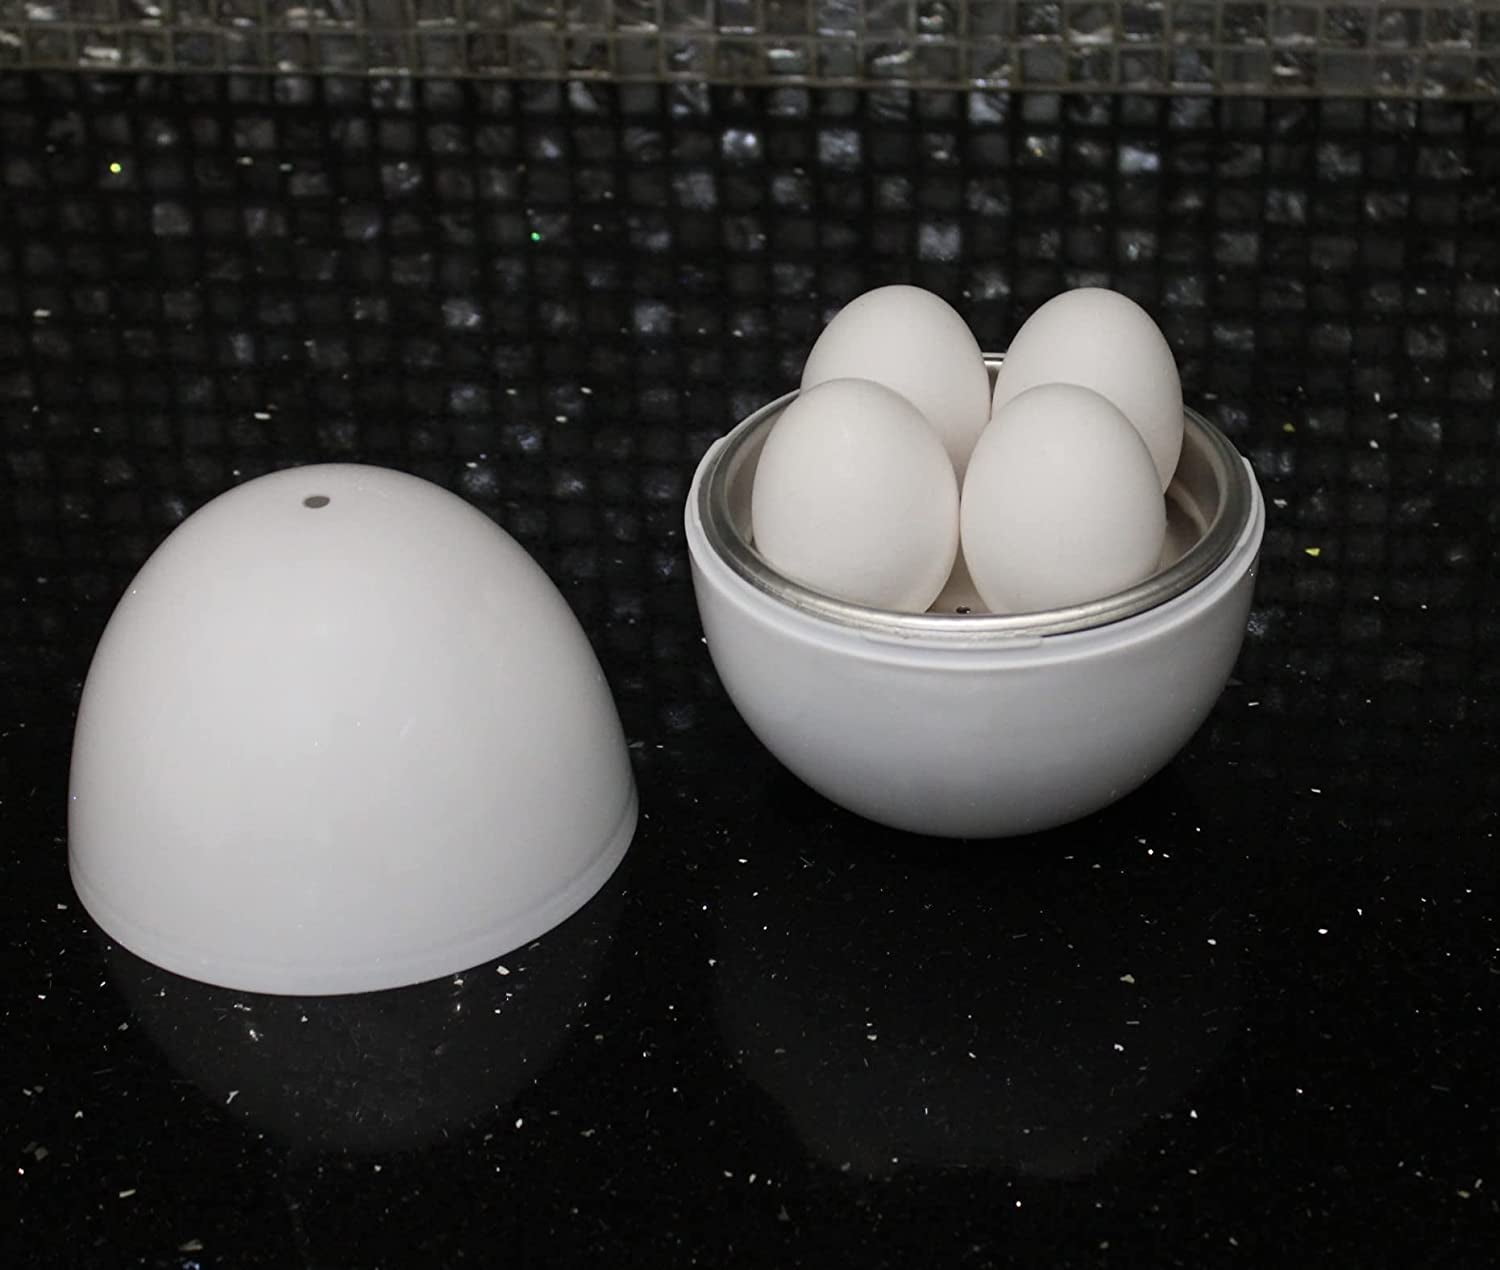 Microwave Egg Boiler Soft Medium Hard Egg Steamer Ball Shape Cooker, 1 unit  - Harris Teeter